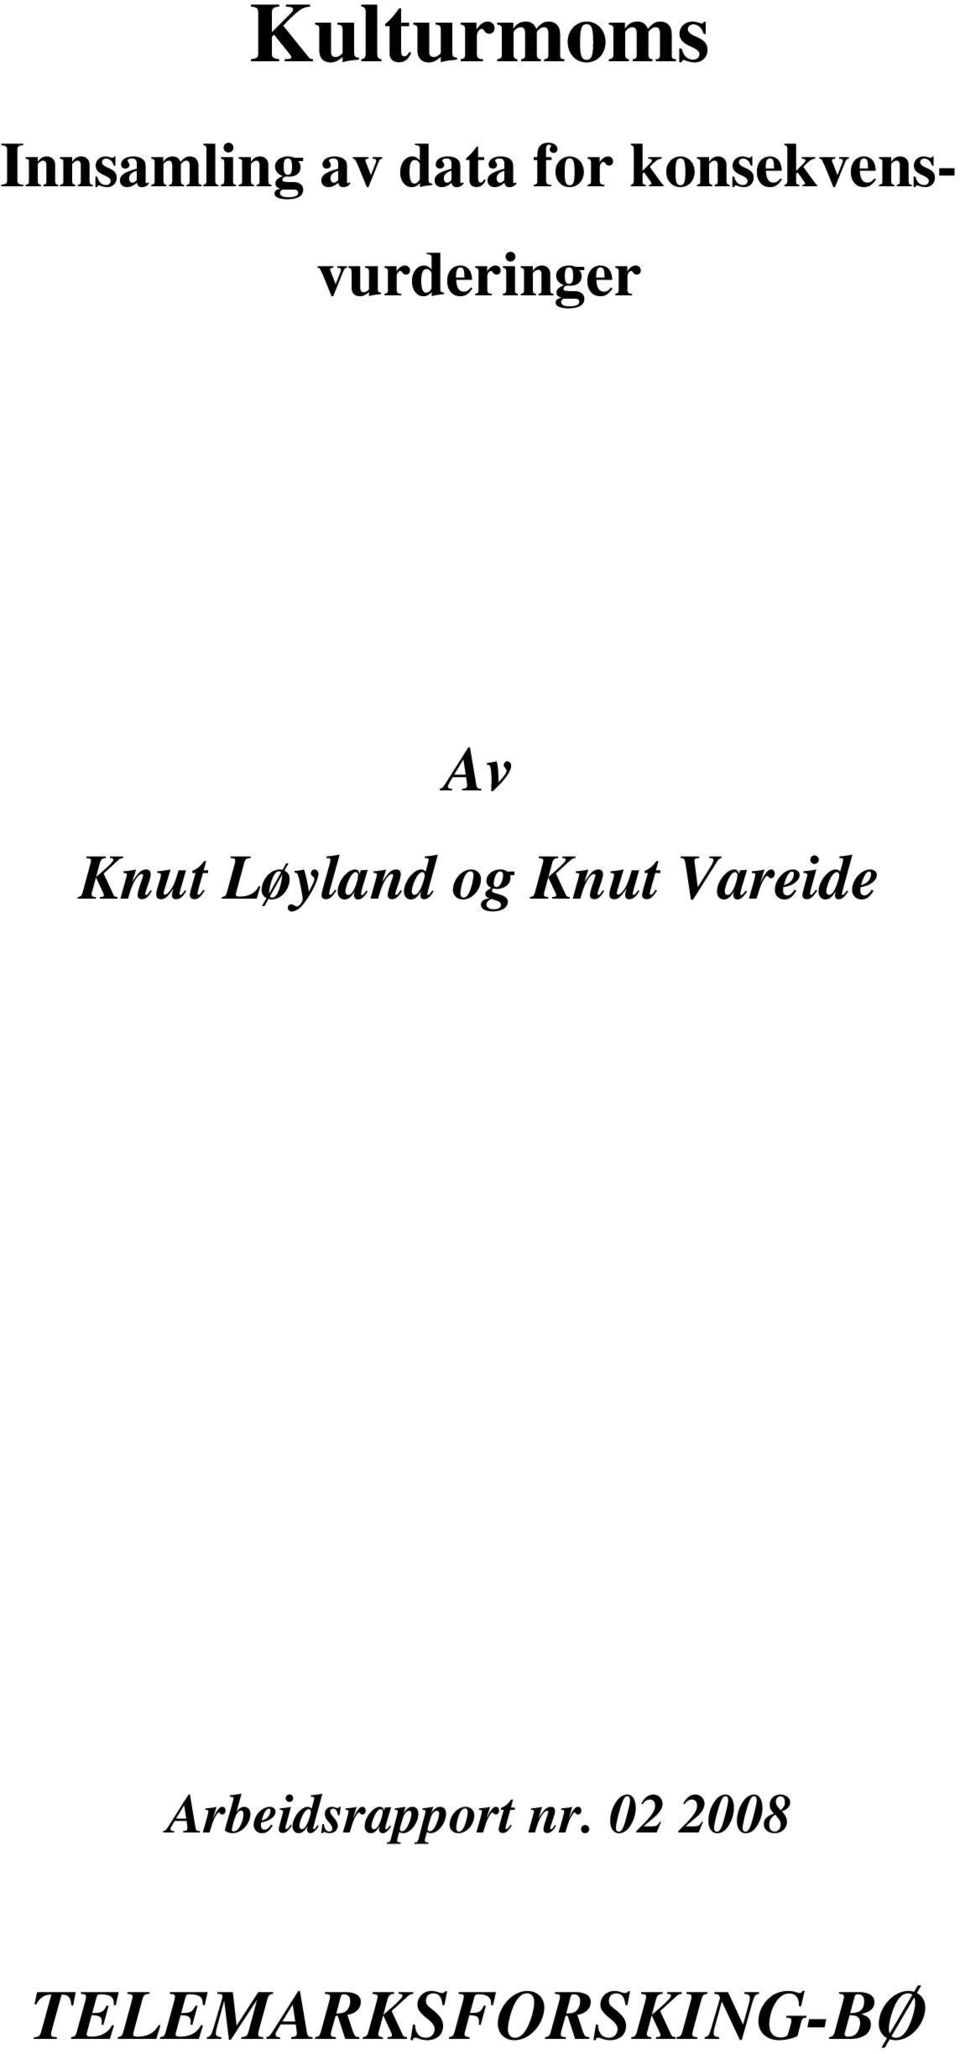 Løyland og Knut Vareide